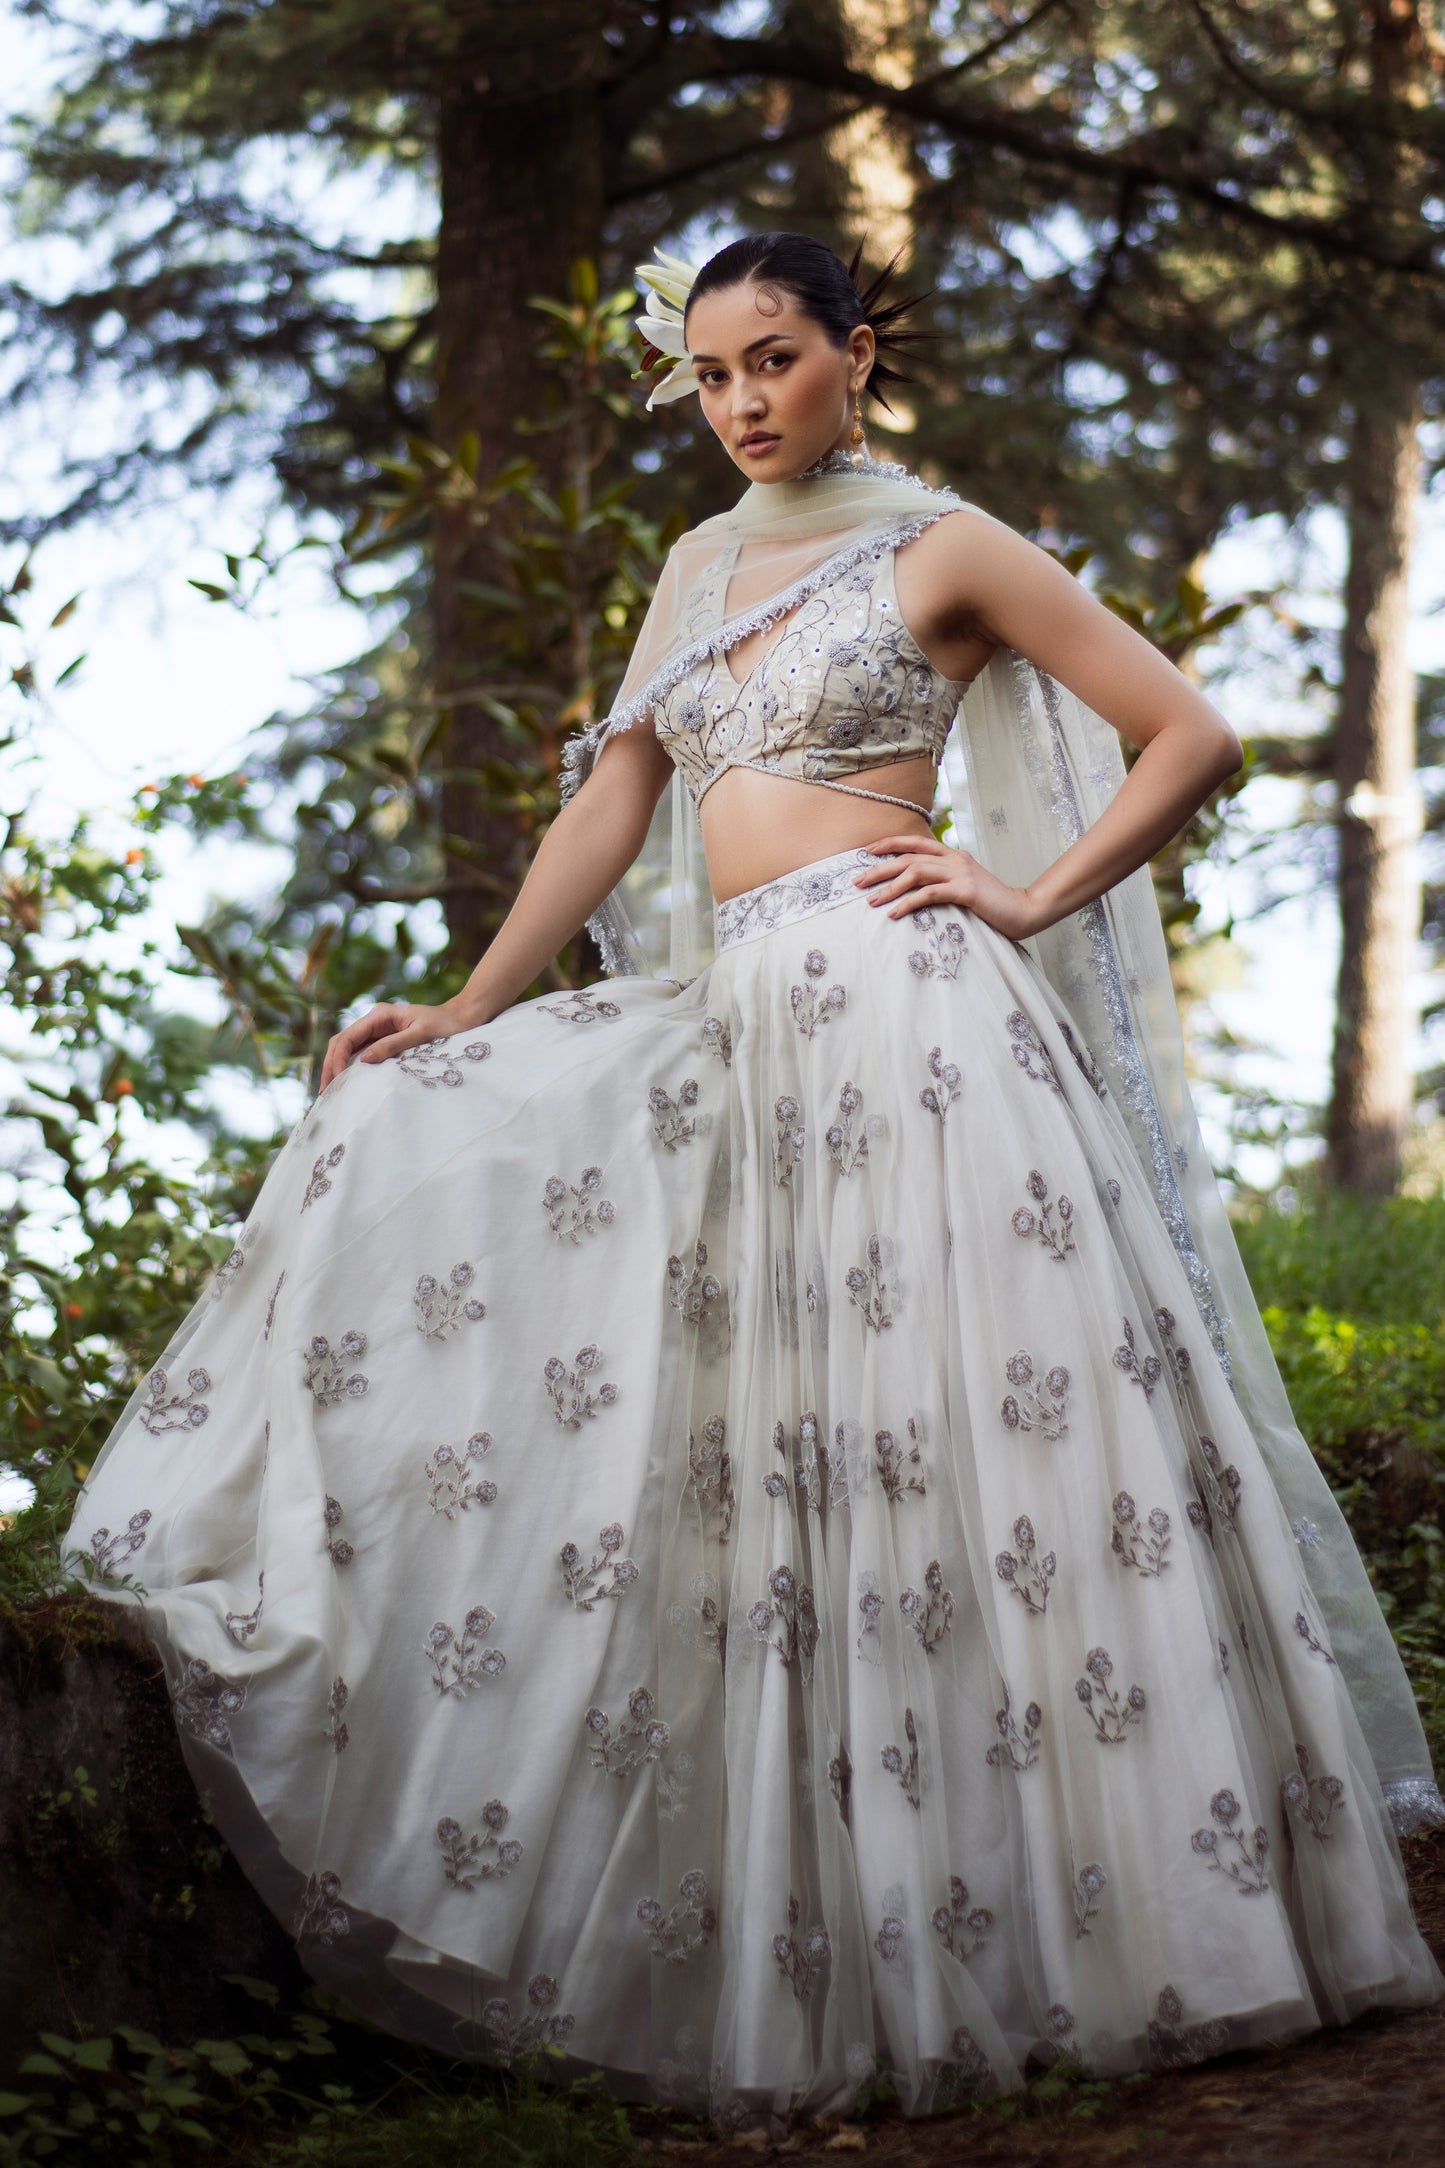 Baavli designer luxury lehenga set for Indian wedding khan market New Delhi.